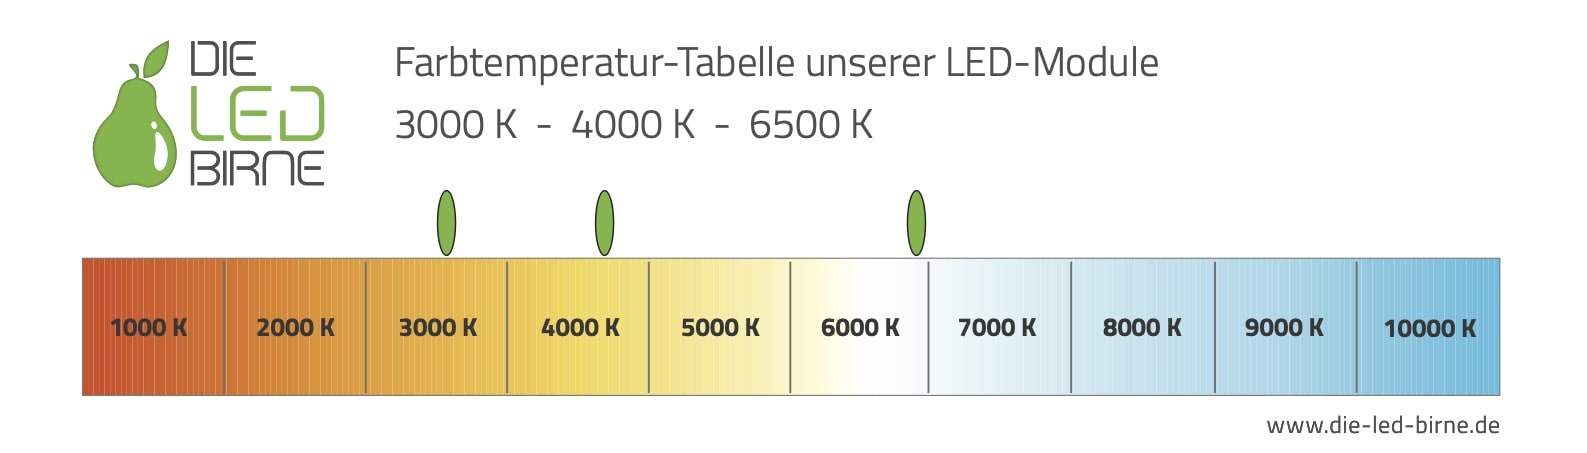 Farbtemperatur-Tabelle für LED-Module in 3000K, 4000K und 6500K